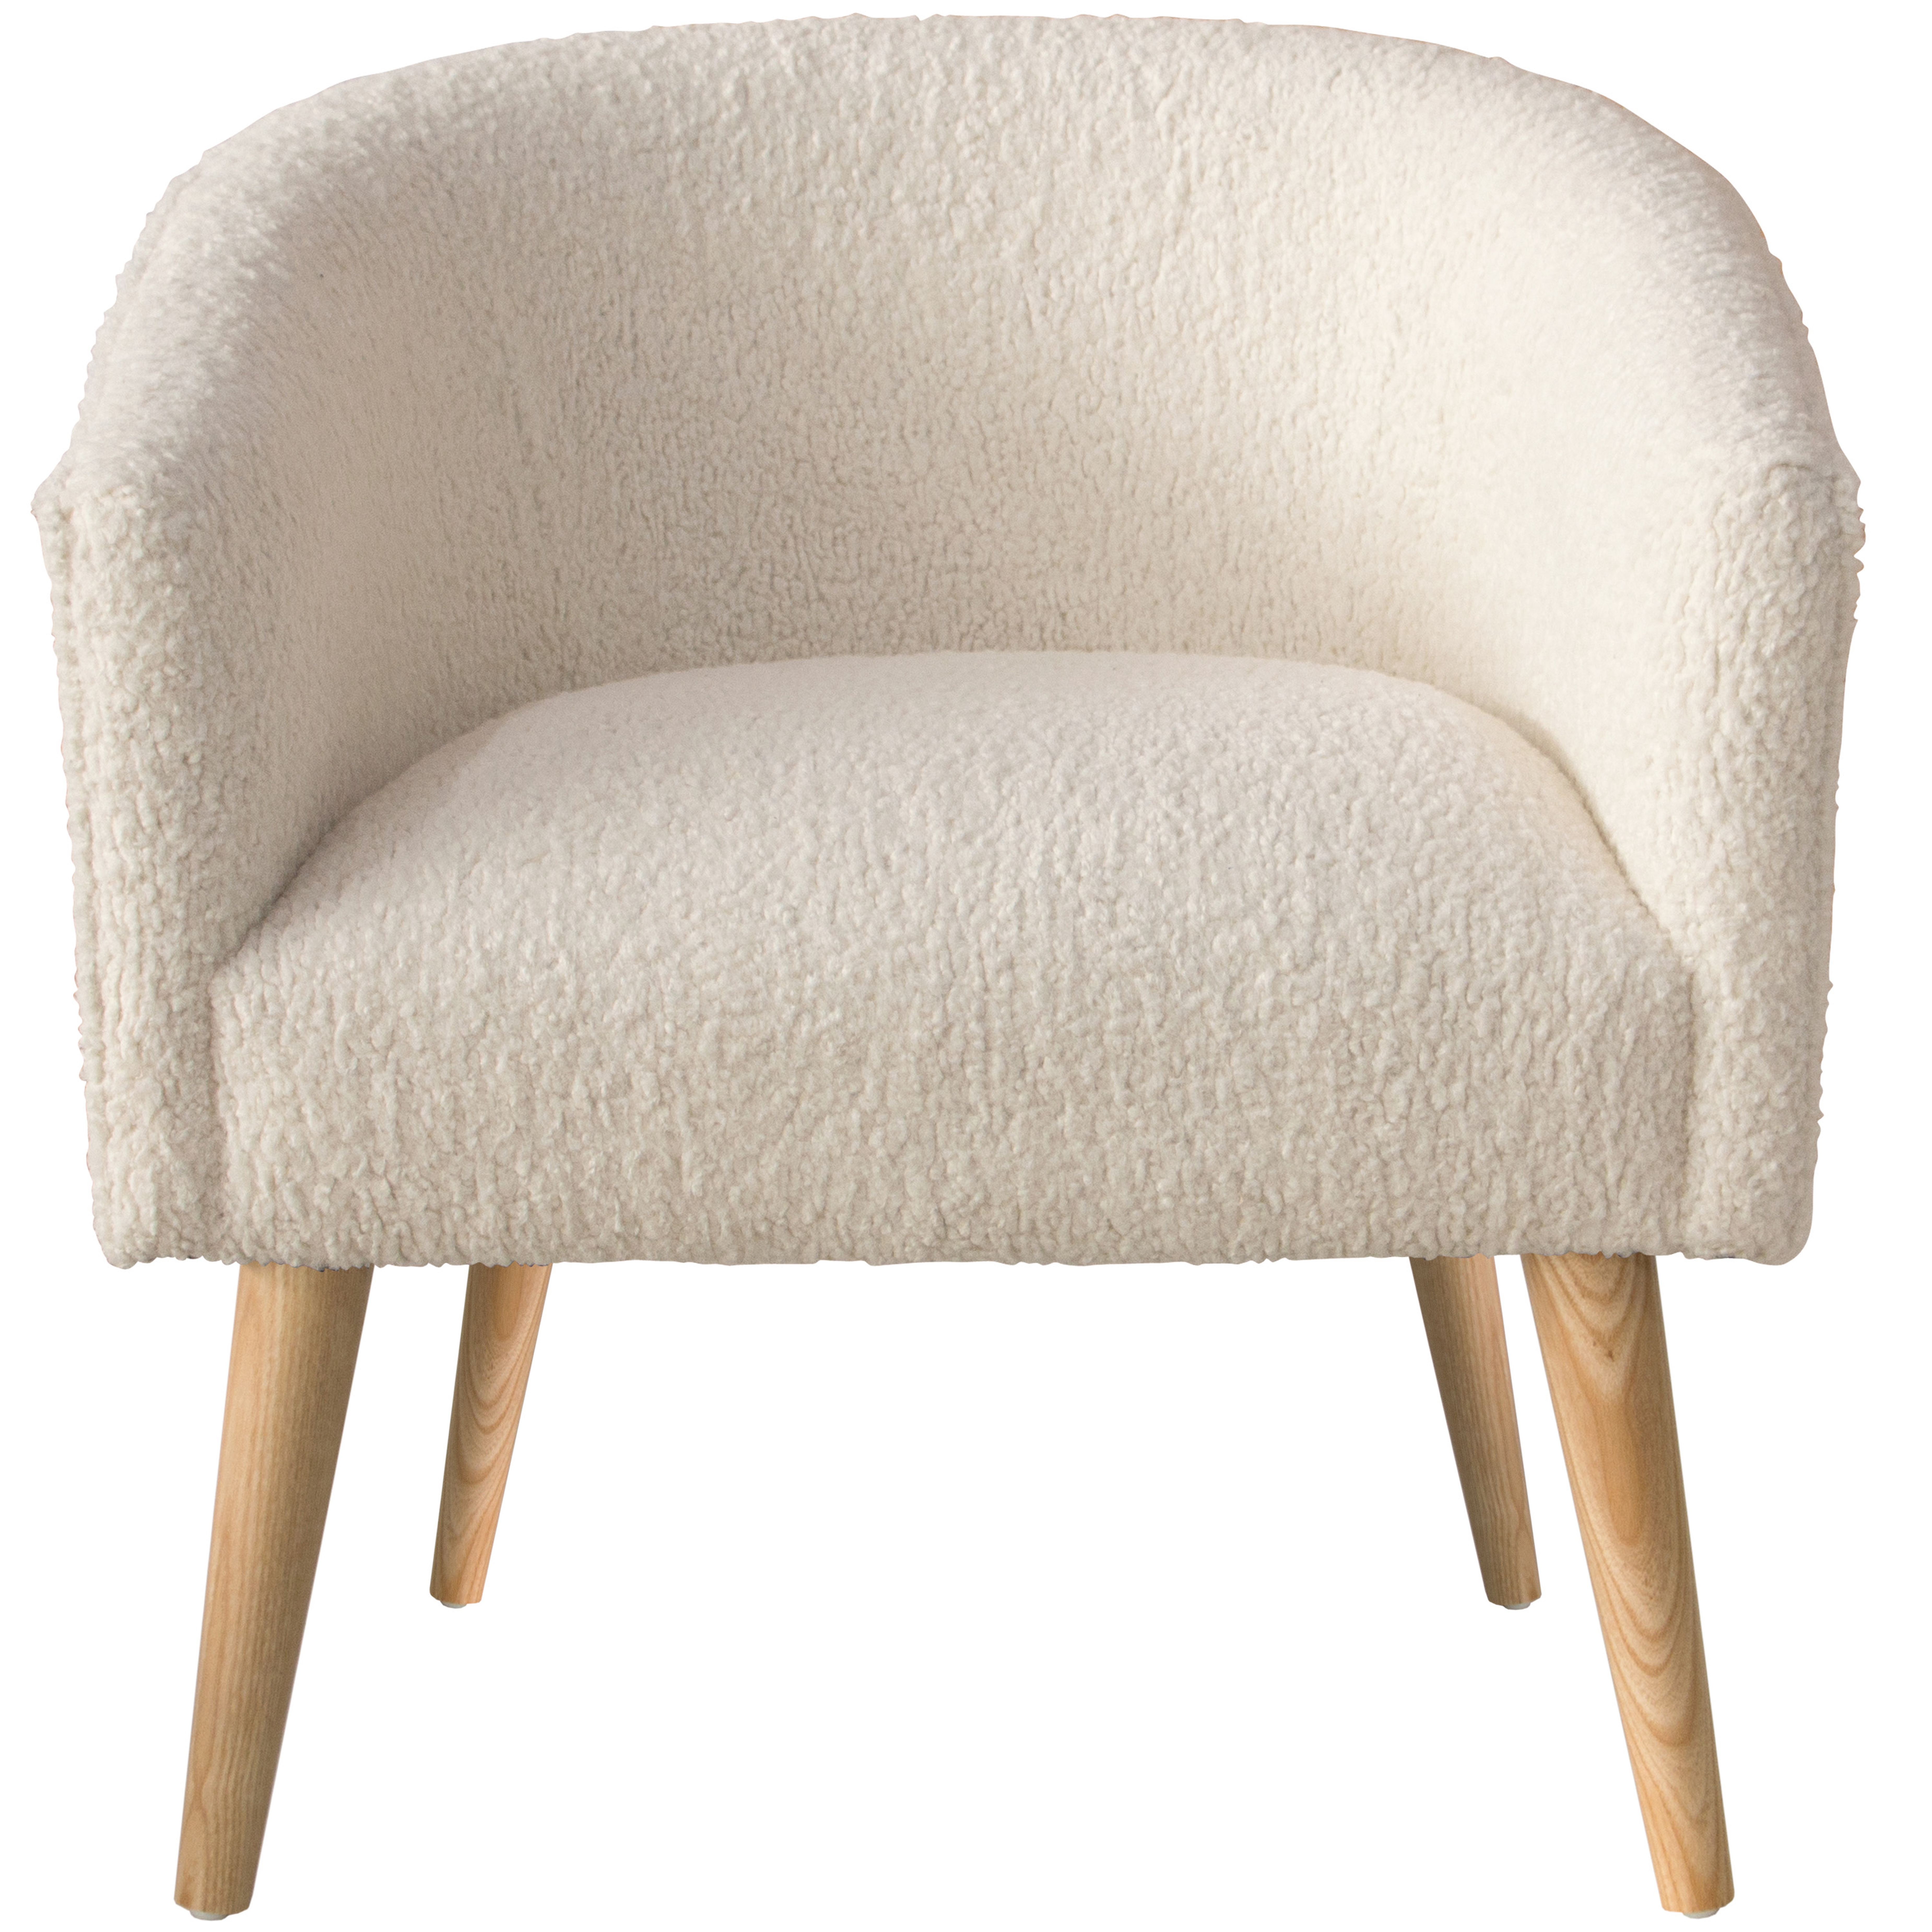 Boden Chair, White Sheepskin - Haldin